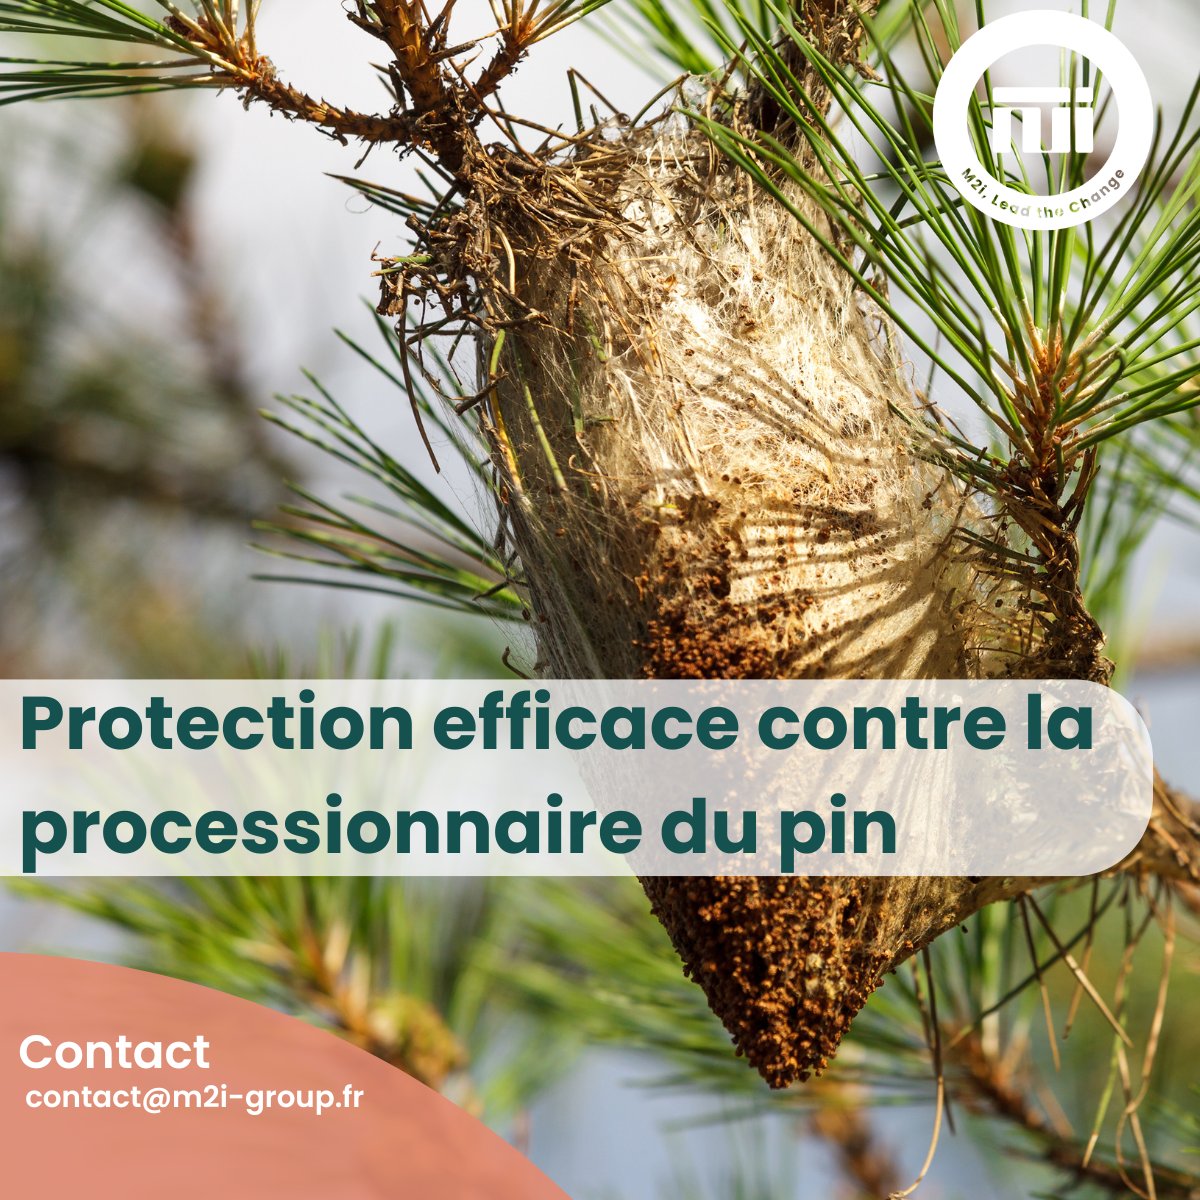 M2i Group propose des solutions innovantes et efficaces pour arrêter la prolifération de ces ravageurs et protéger ainsi efficacement les pins des communes et des forêts.